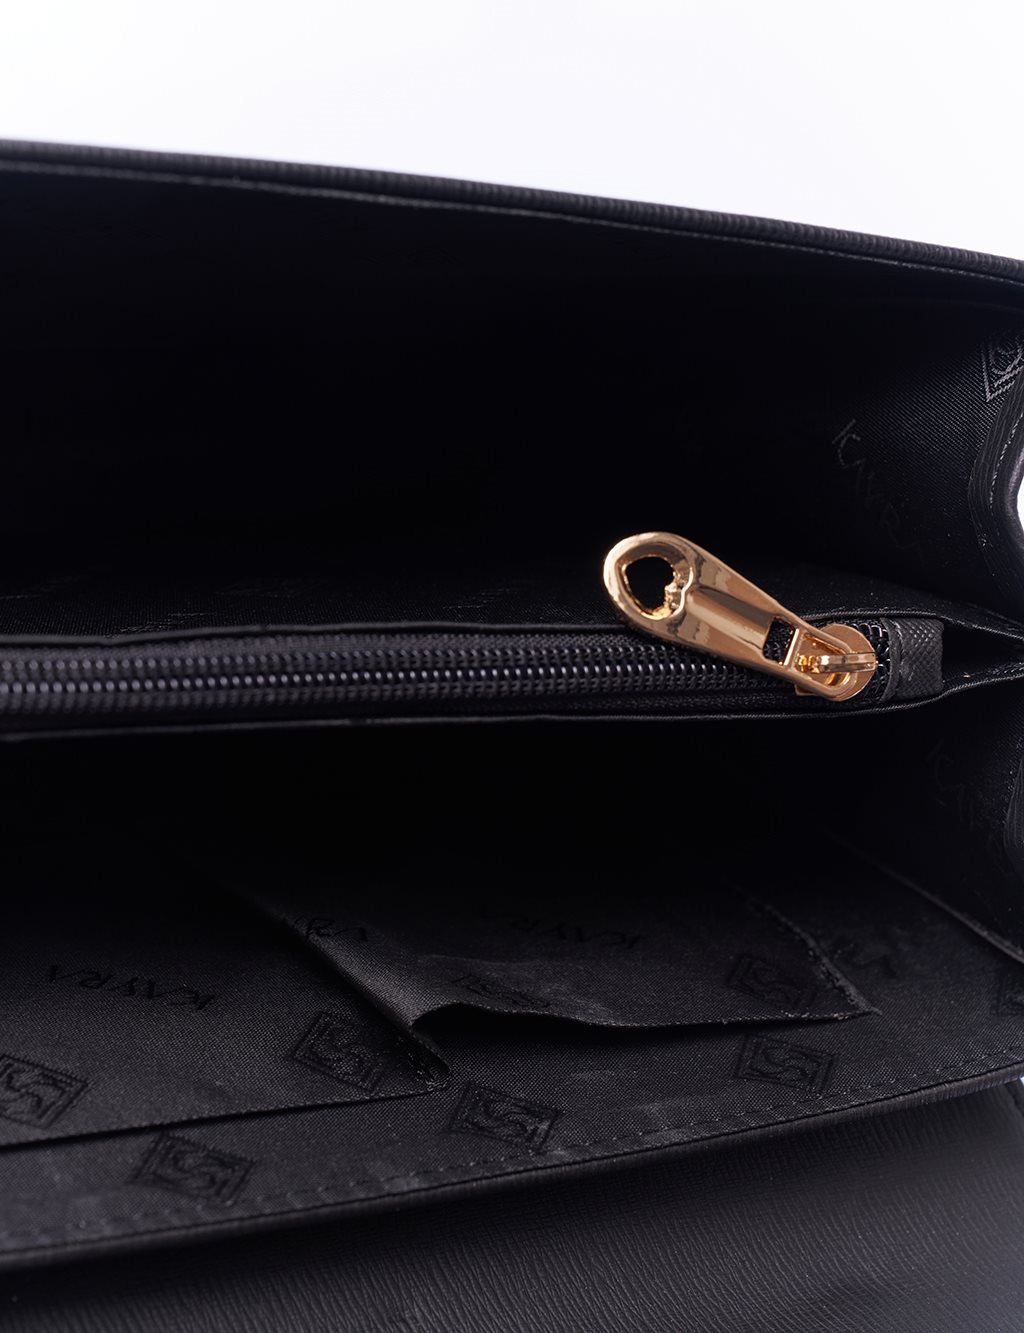 Designer Cover Chain Bag Black